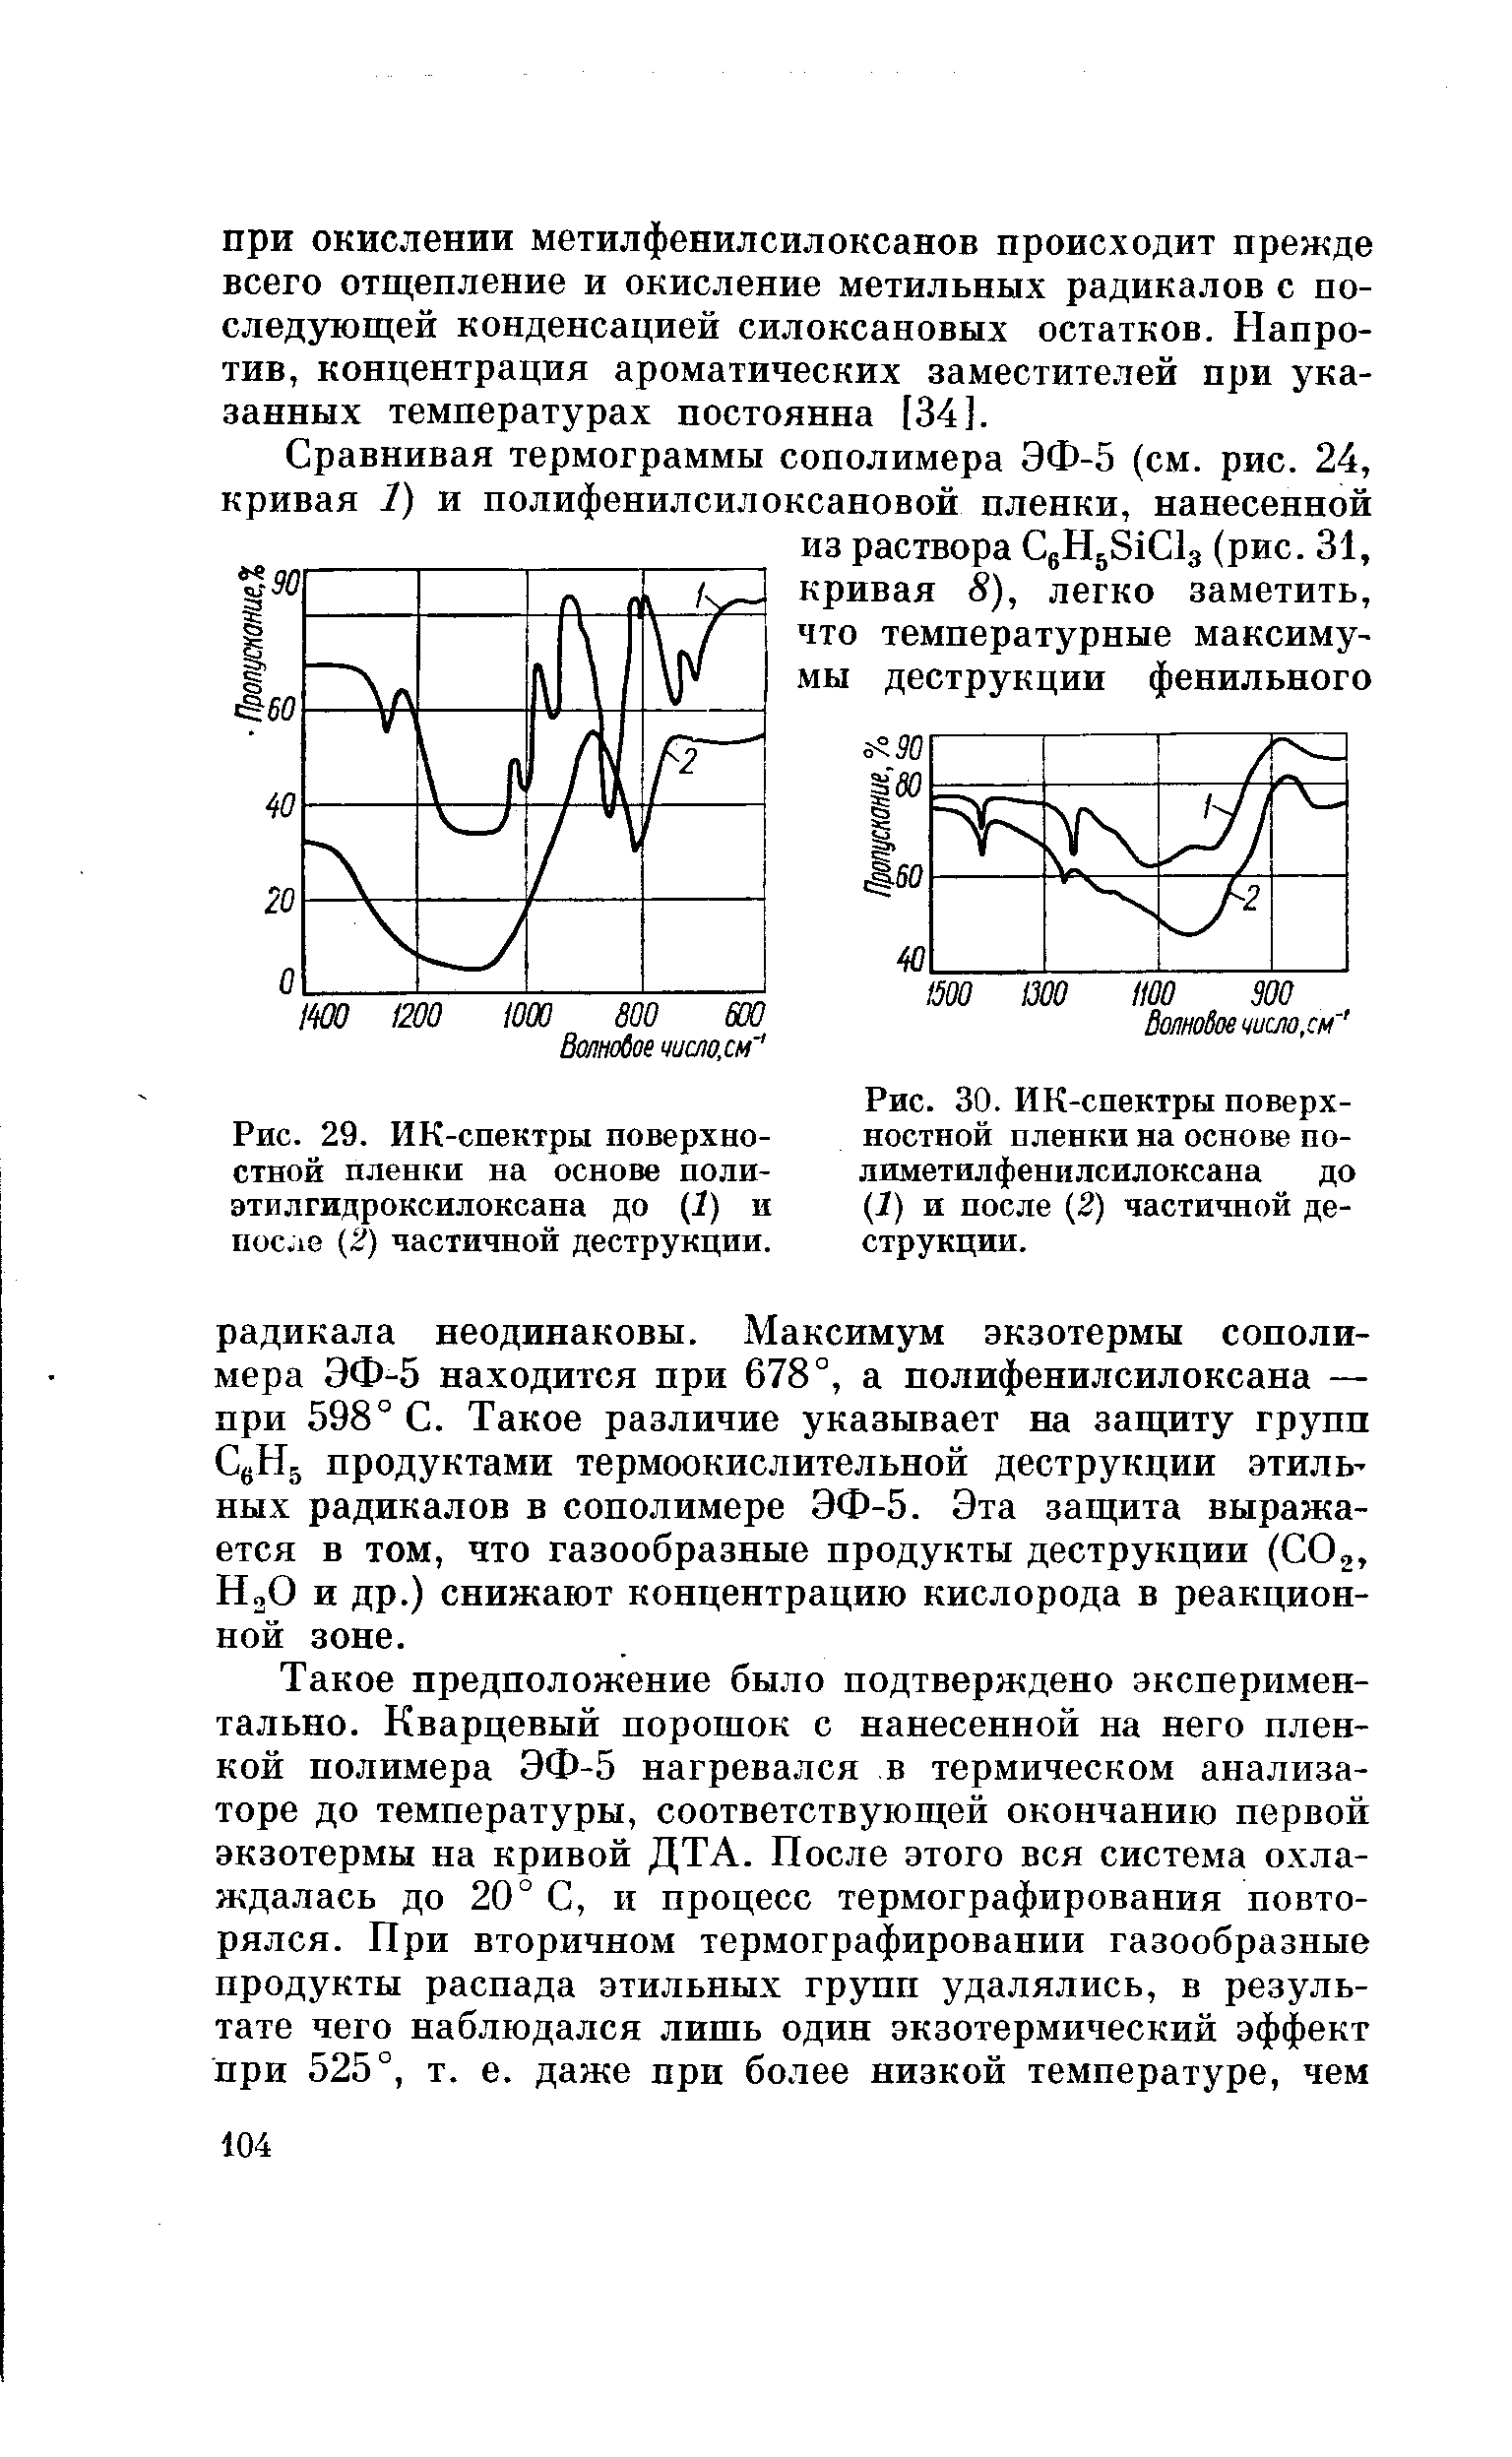 Рис. 30. ИК-спектры поверхностной пленки на основе по-лиметилфенилсилоксана до (1) и после (2) частичной деструкции.
